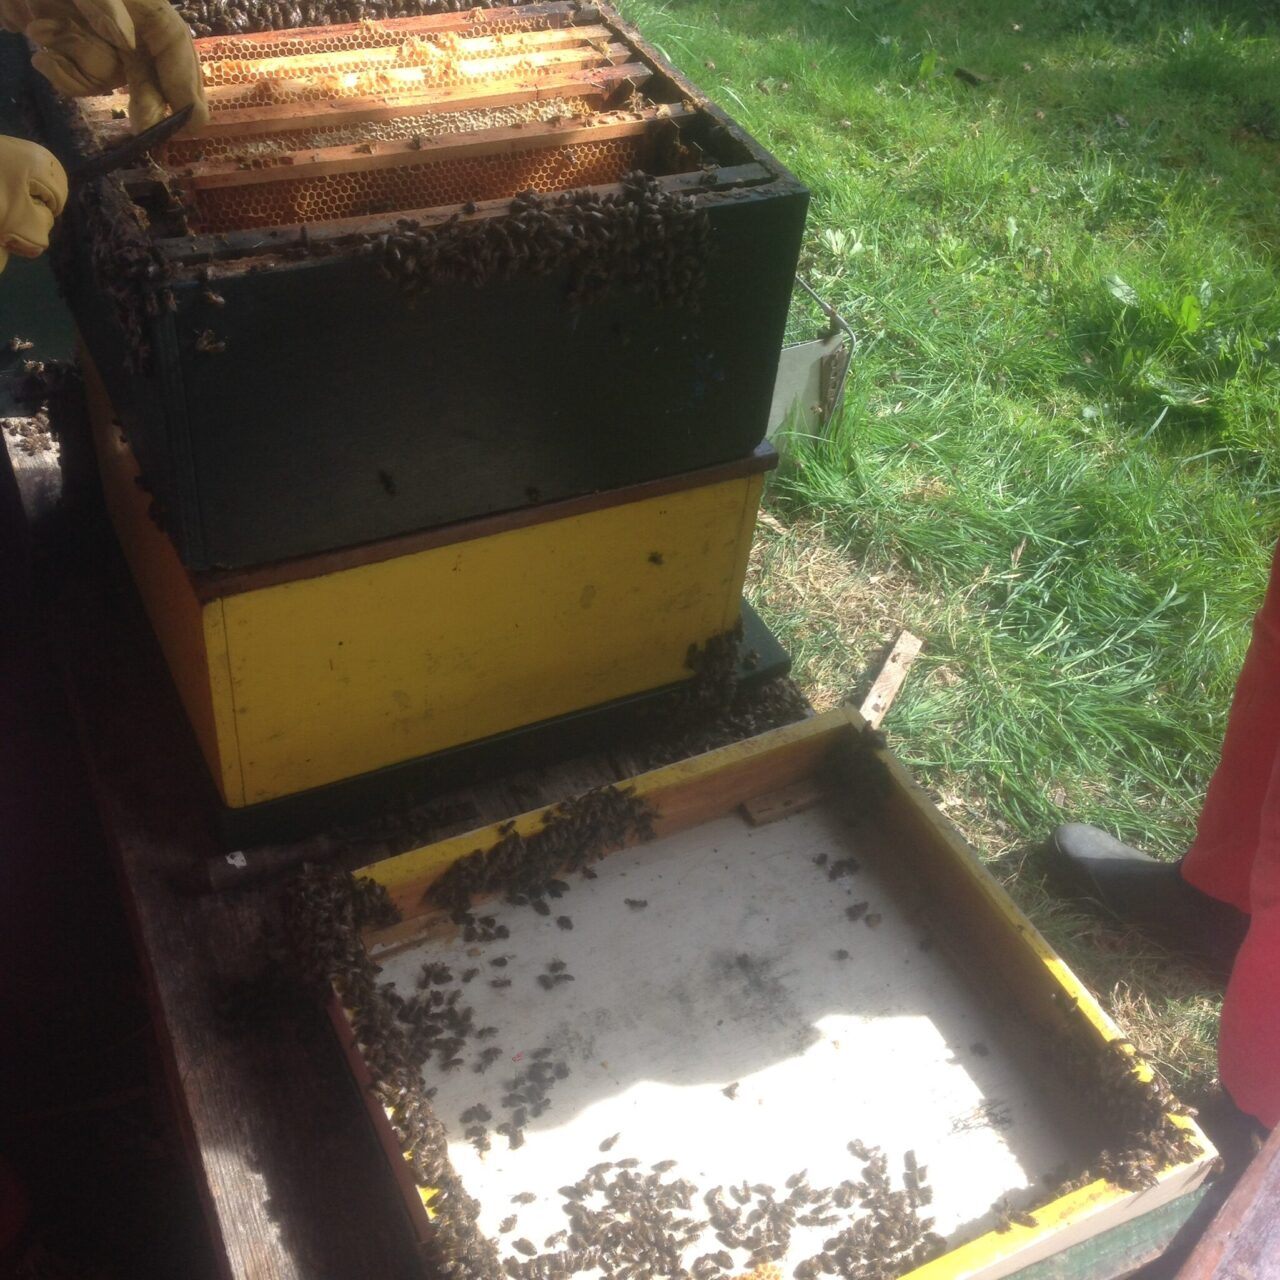 Uit de praktijk blijkt dat bijenvolken ook zonder varroabestrijding kunnen overleven. Het vraagt wel een andere benadering van het bijenhouden. In dit blogbericht een blik op een volk dat al zeven jaar niet meer behandeld werd.